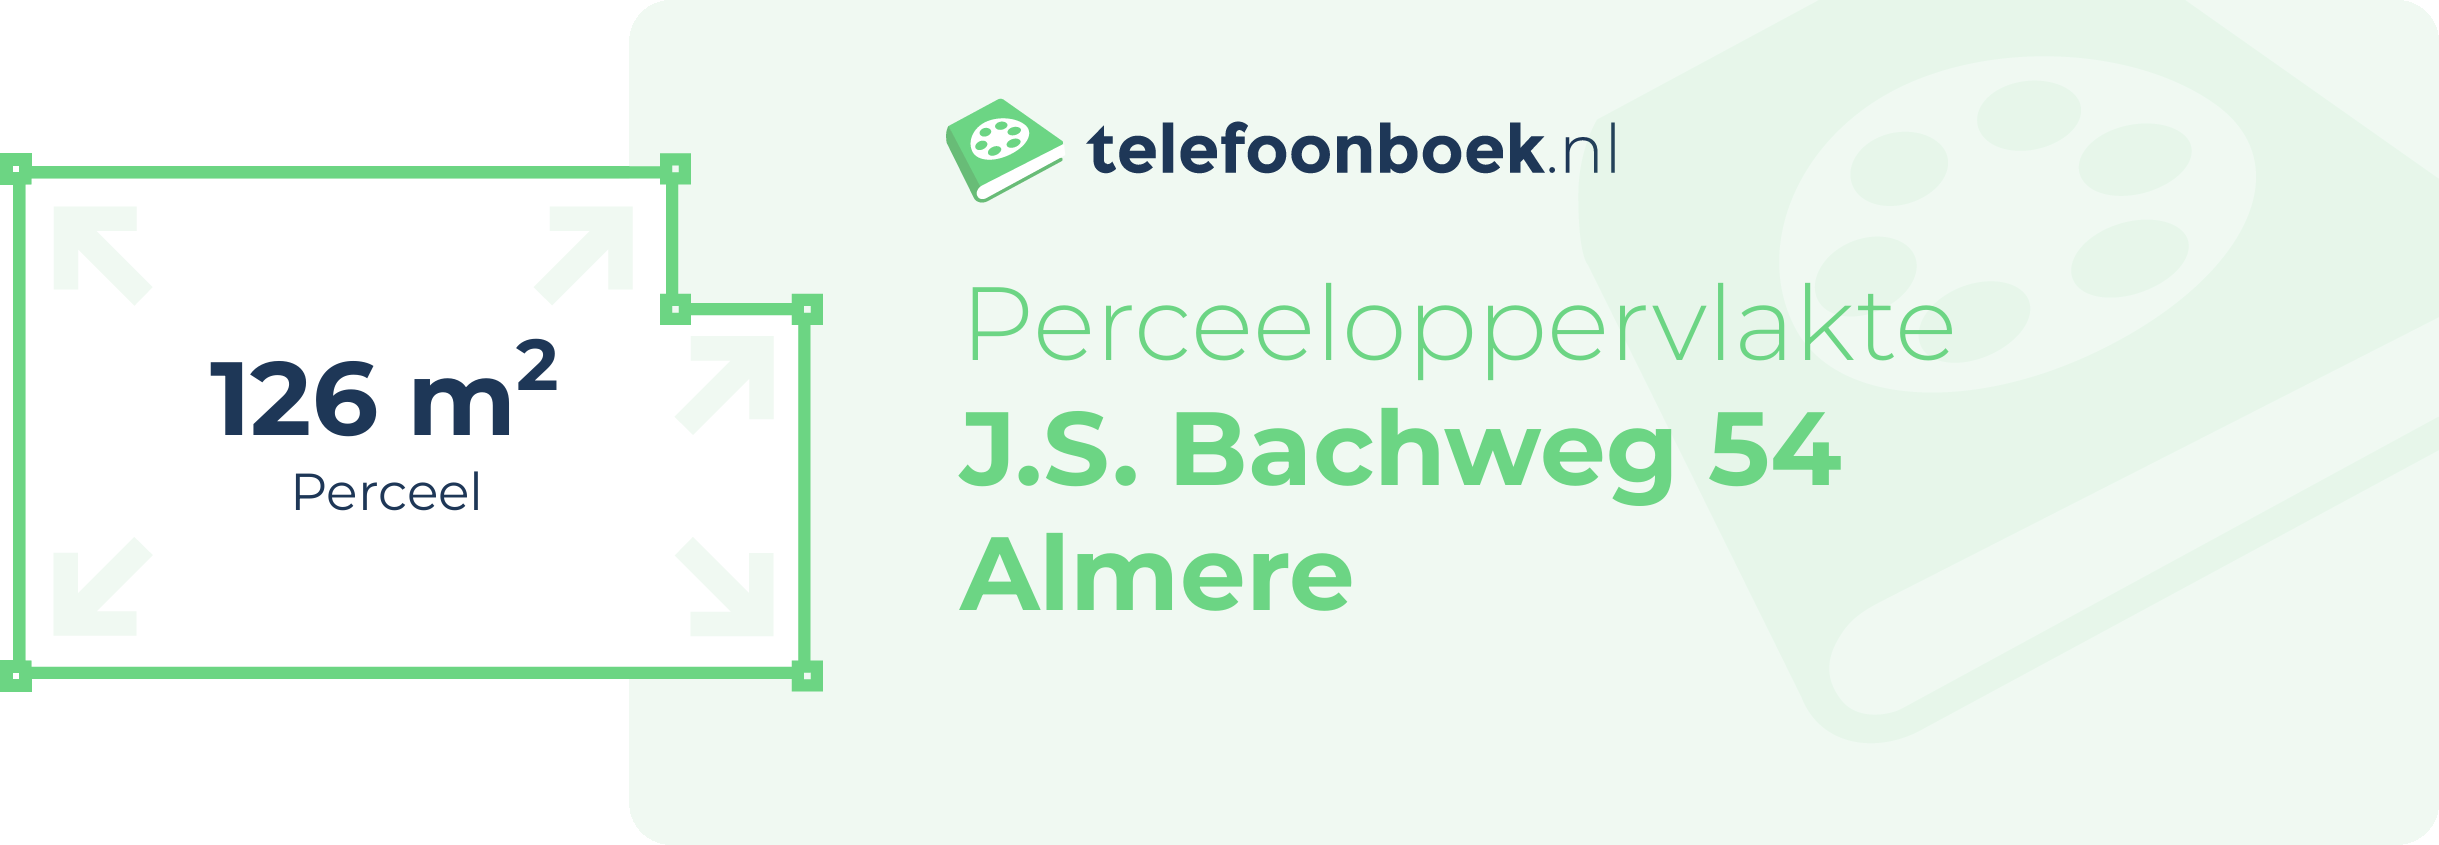 Perceeloppervlakte J.S. Bachweg 54 Almere